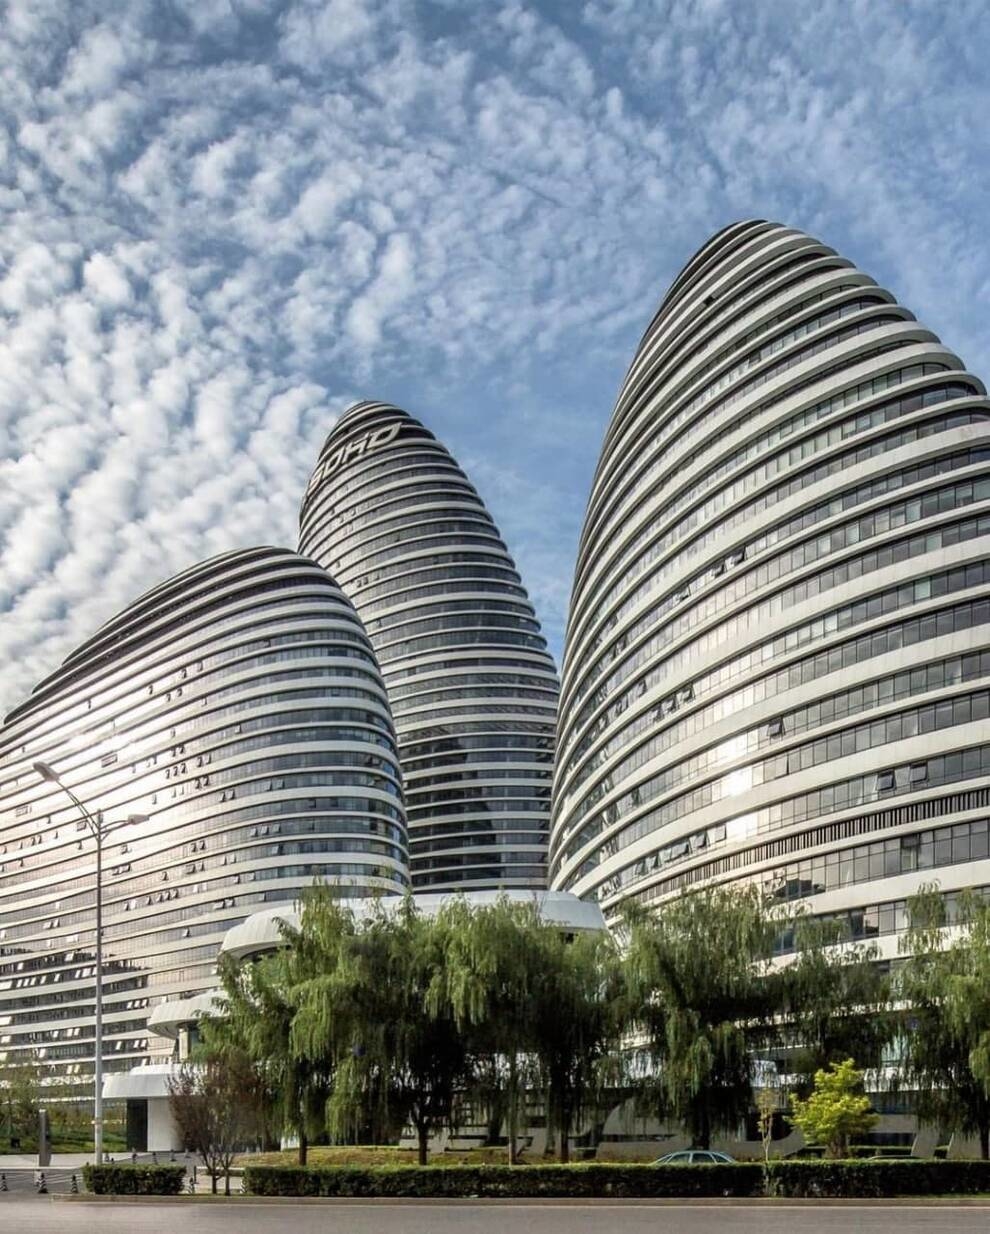 Pozdrowienia i pożegnanie z Pekinem - kompleks wieżowca Wangjing Soho